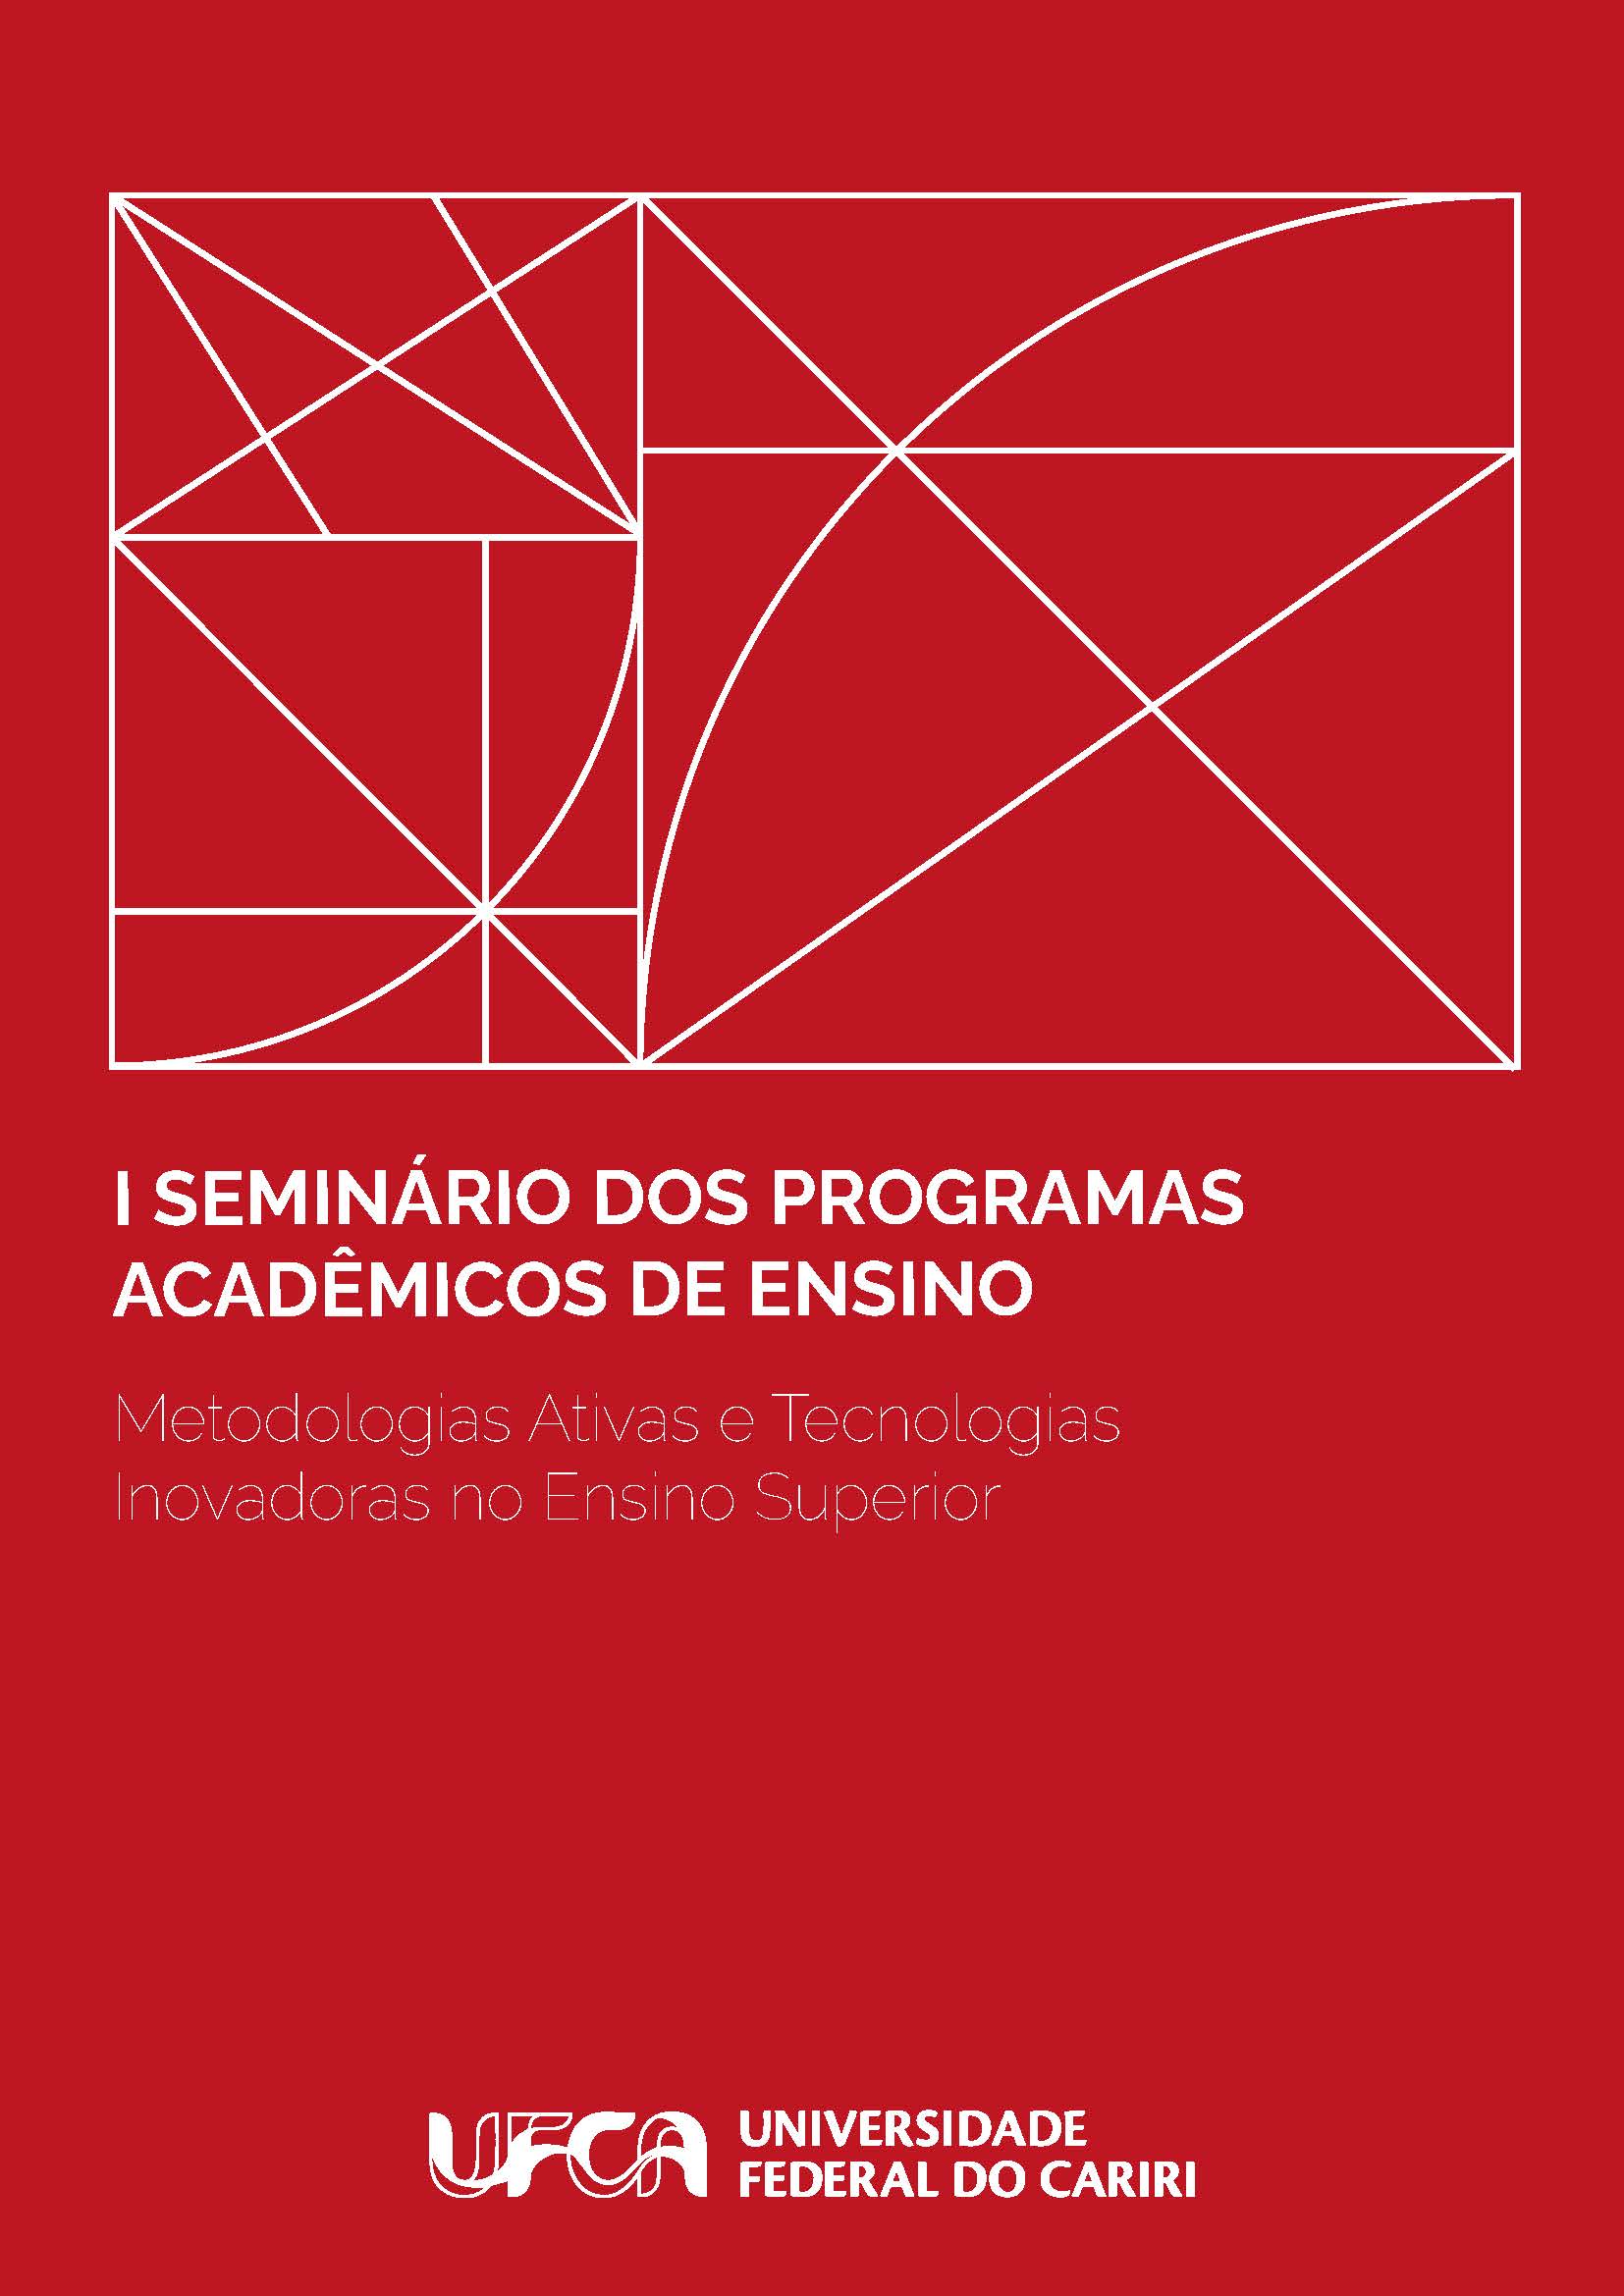 I Seminário dos Programas Acadêmicos de Ensino: Metodologias Ativas e Tecnologias Inovadoras no Ensino Superior thumbnail